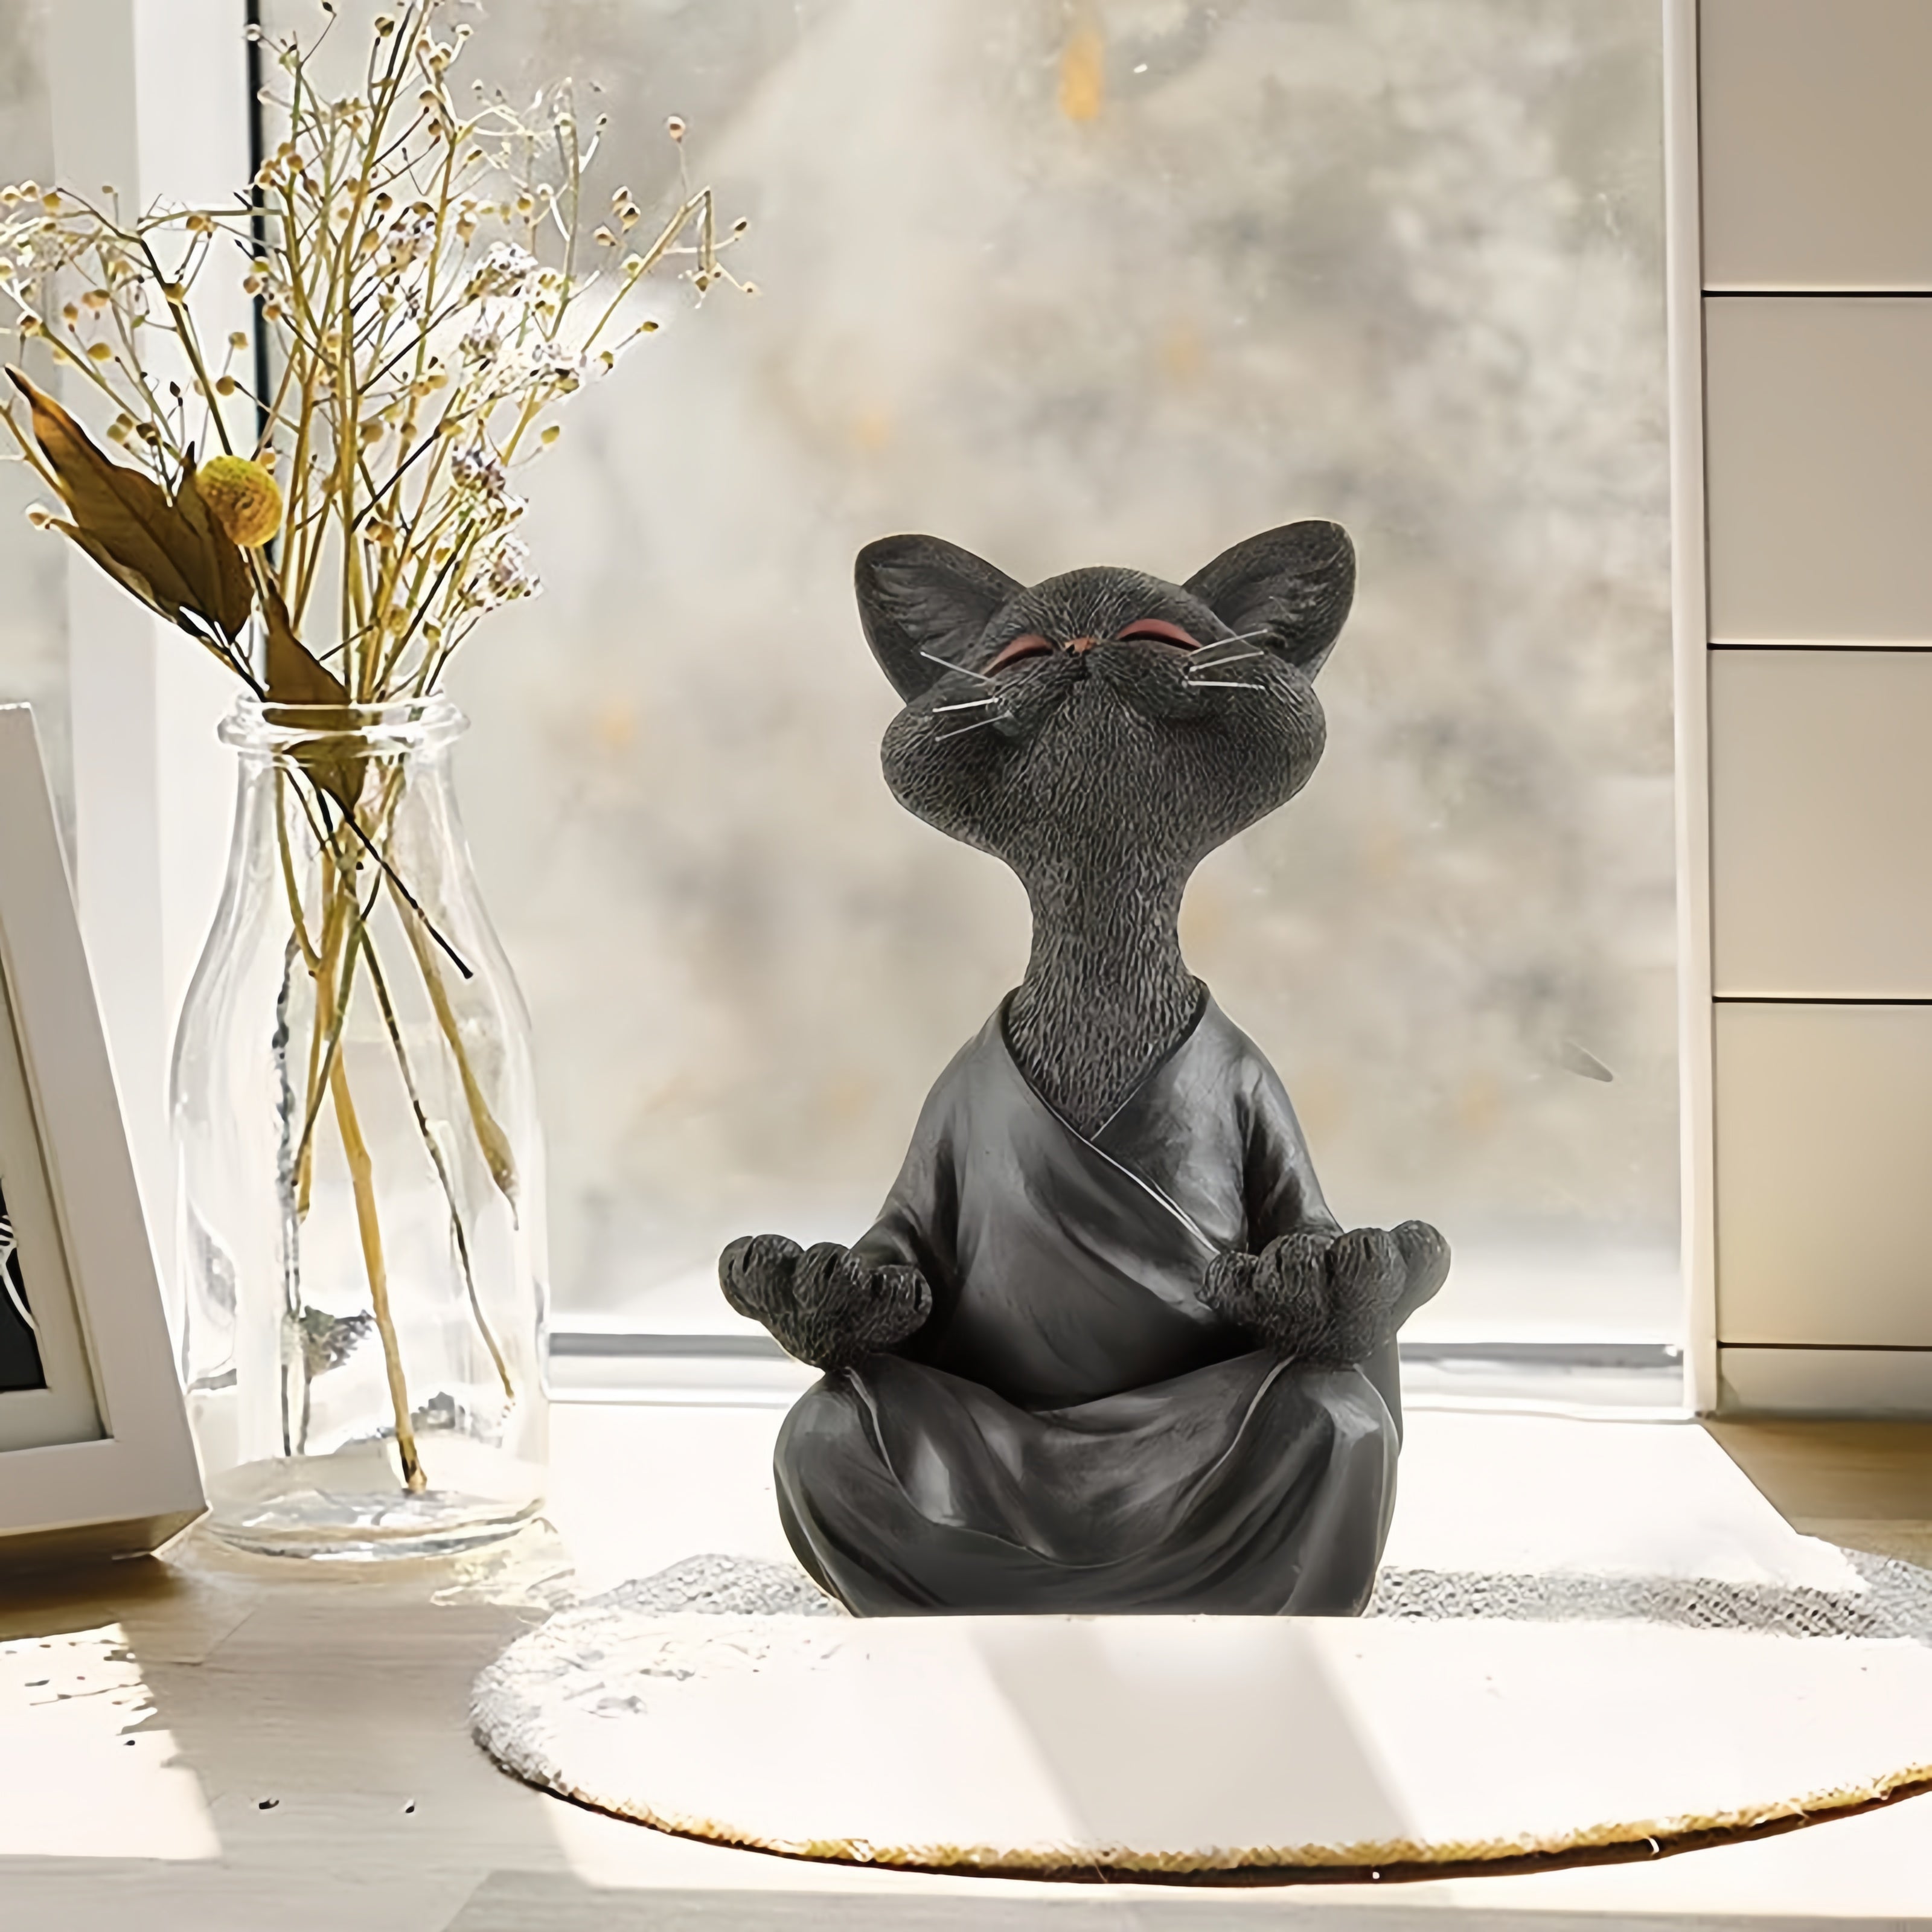 Meditation cat statue in sunlight